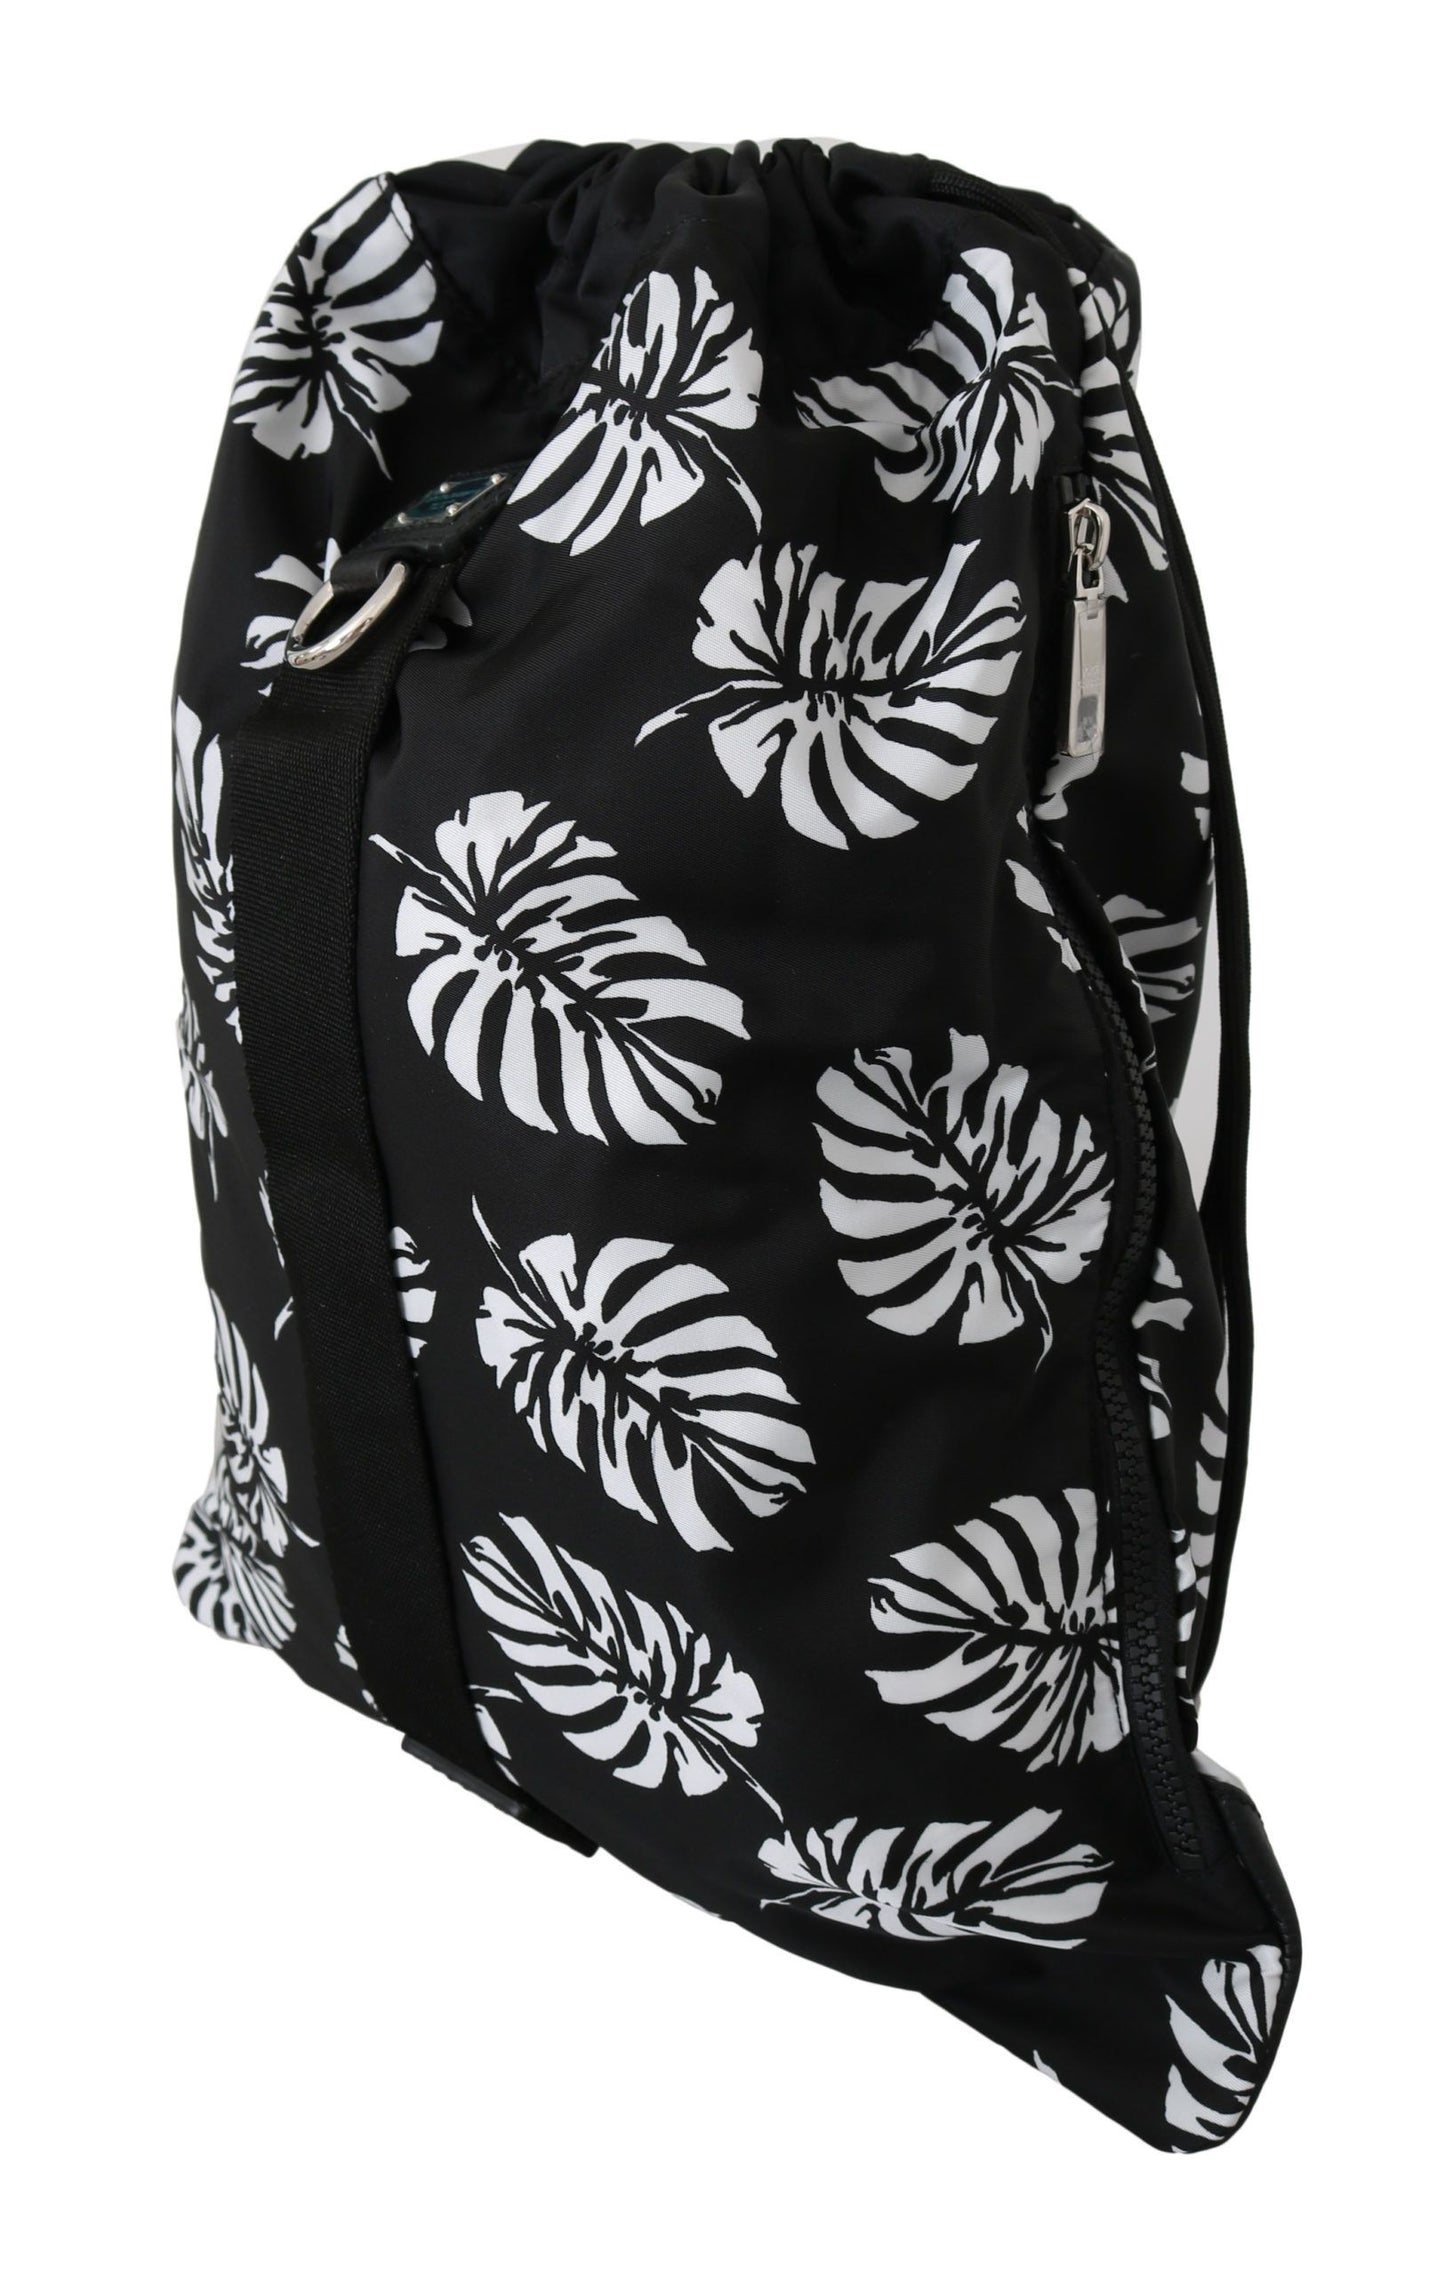 Black Palm Leaves Adjustable Drawstring Nap Sack Bag